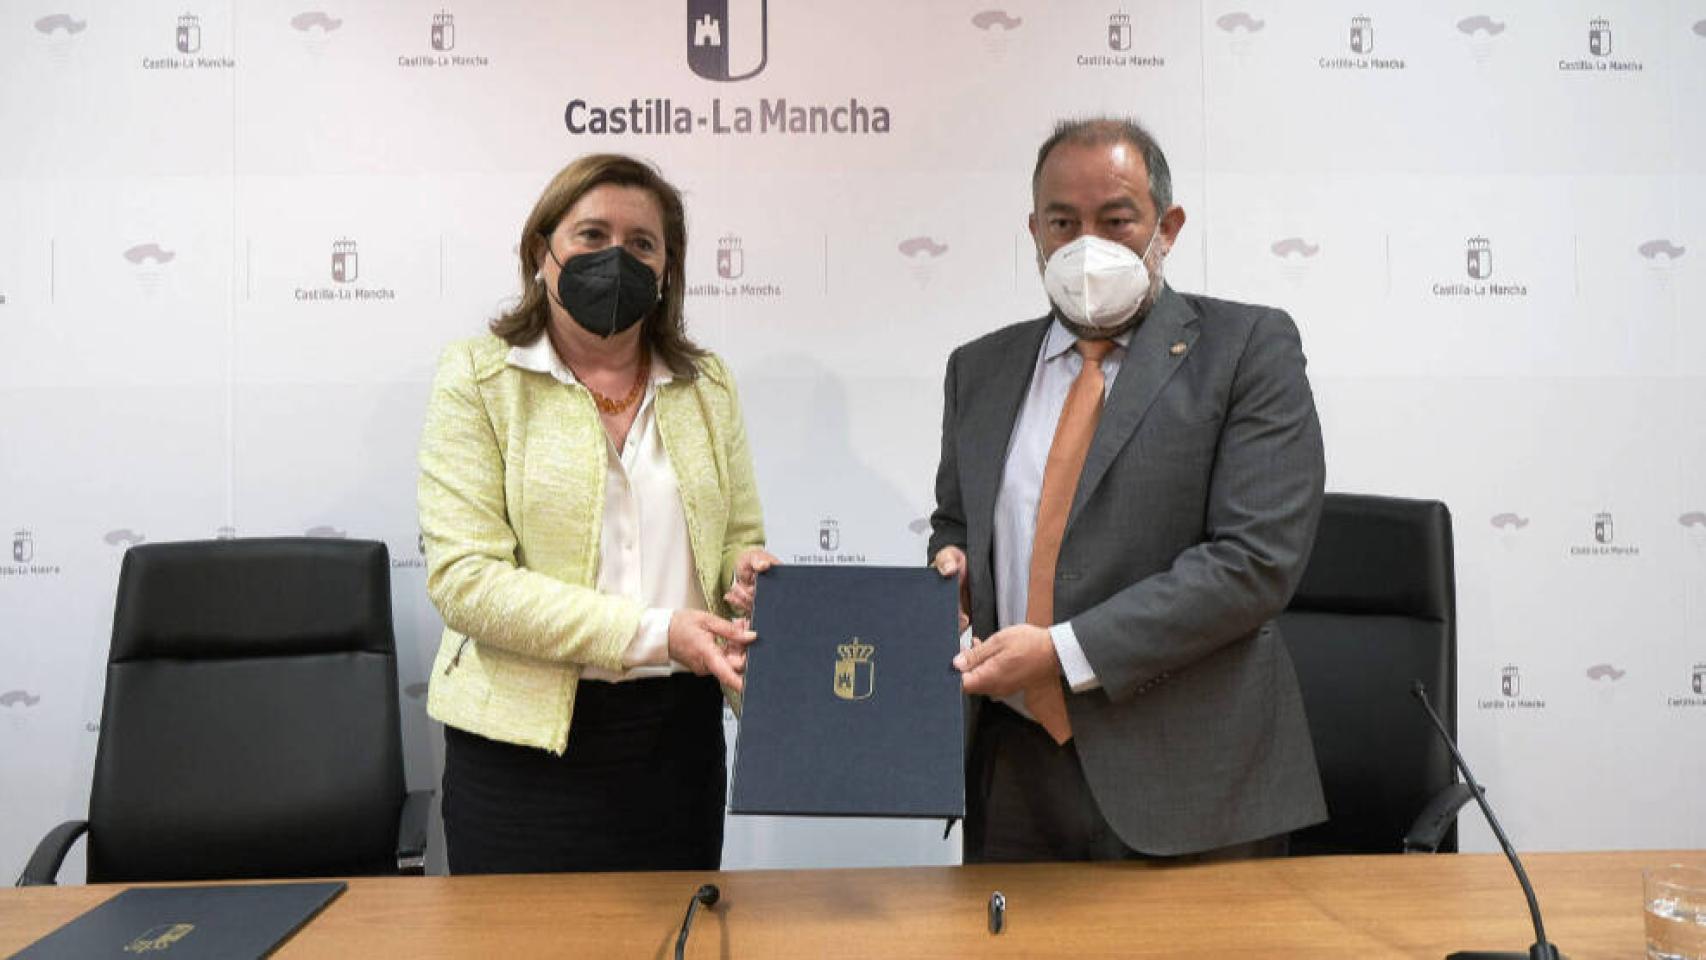 La consejera de Educación de Castilla-La Mancha, Rosana Rodríguez, y el rector de la UCLM, Julián Garde, en su encuentro de este miércoles